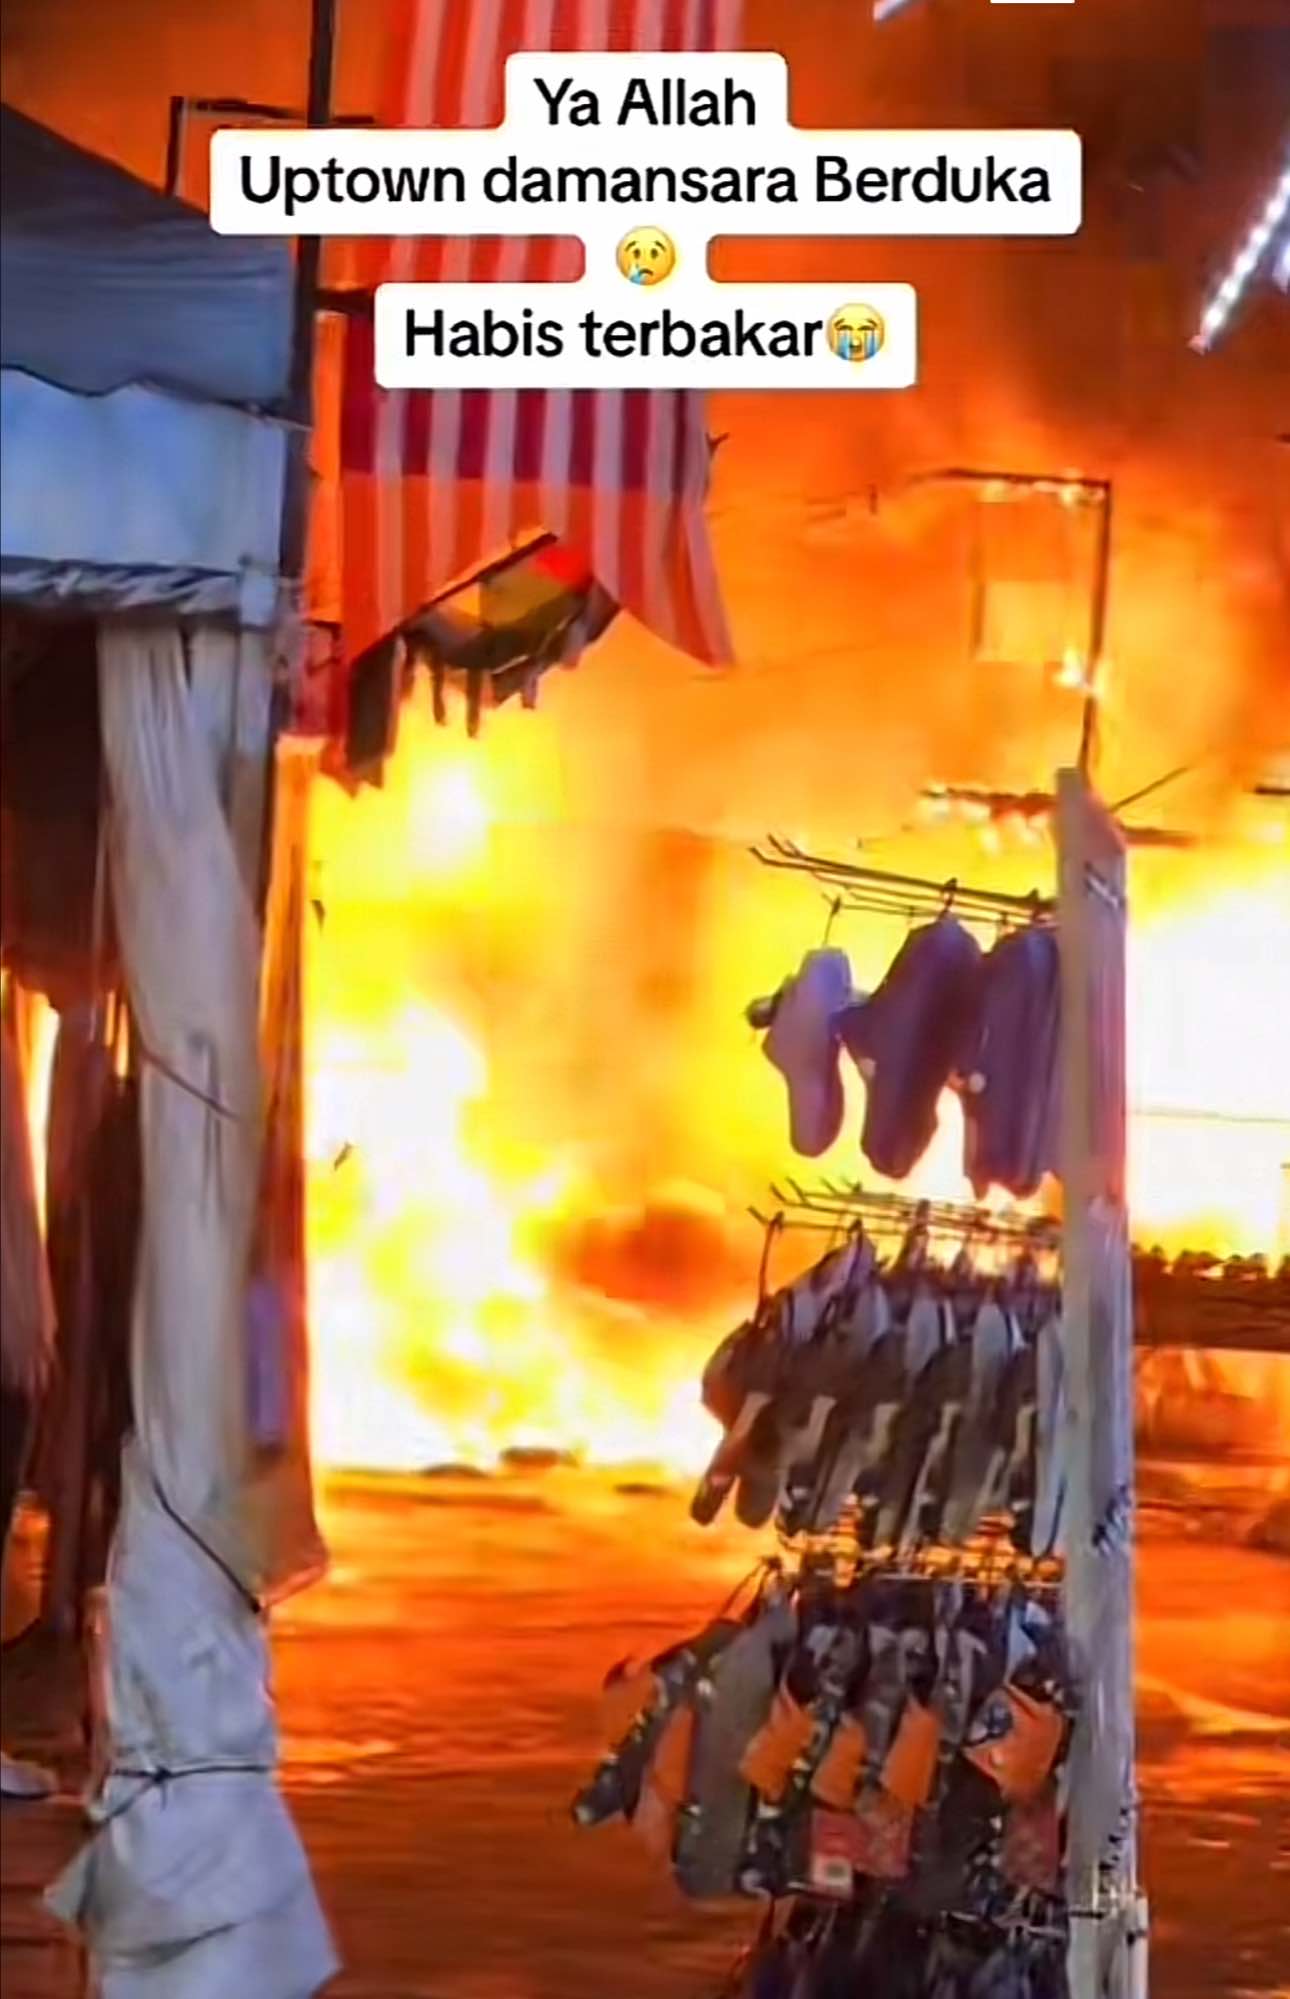 Blazing fire at uptown damansara stalls